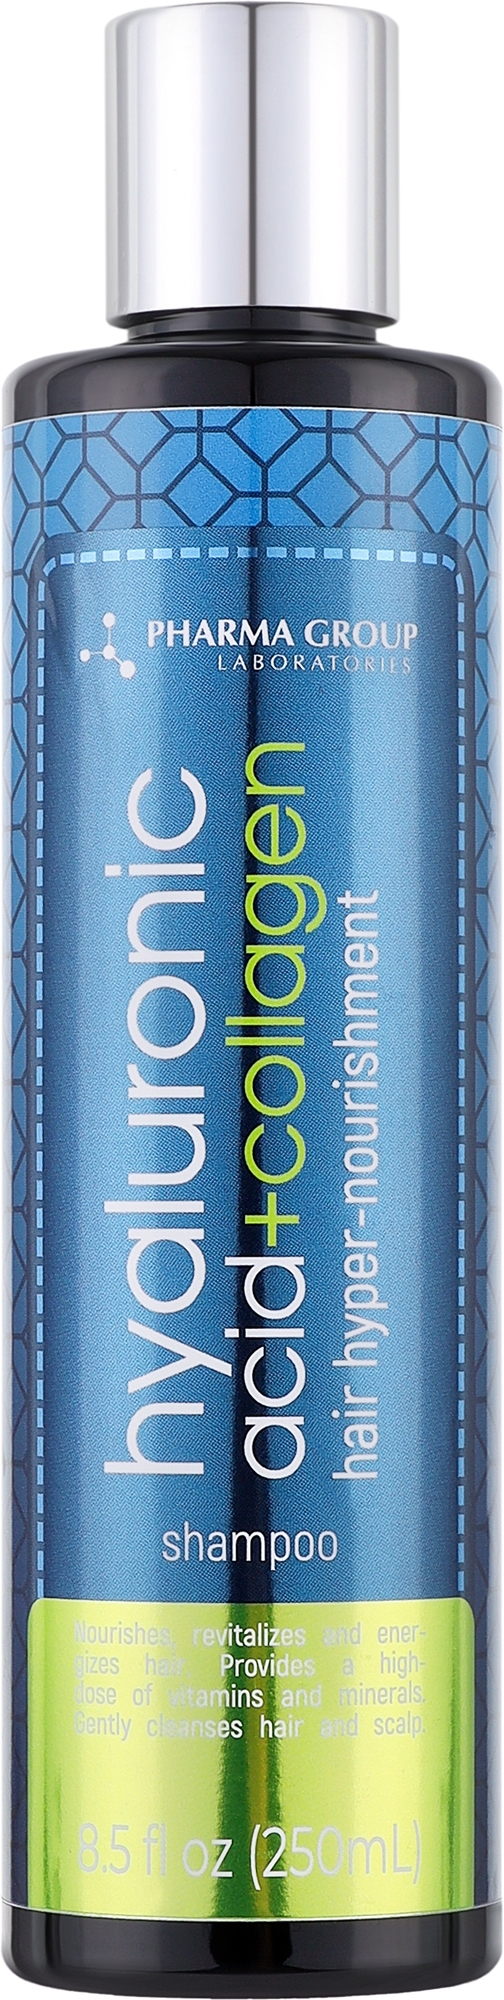 Шампунь для волосся "Гіперживлення від коренів до кінчиків" - Pharma Group Laboratories Hyaluronic Acid + Collagen — фото 250ml